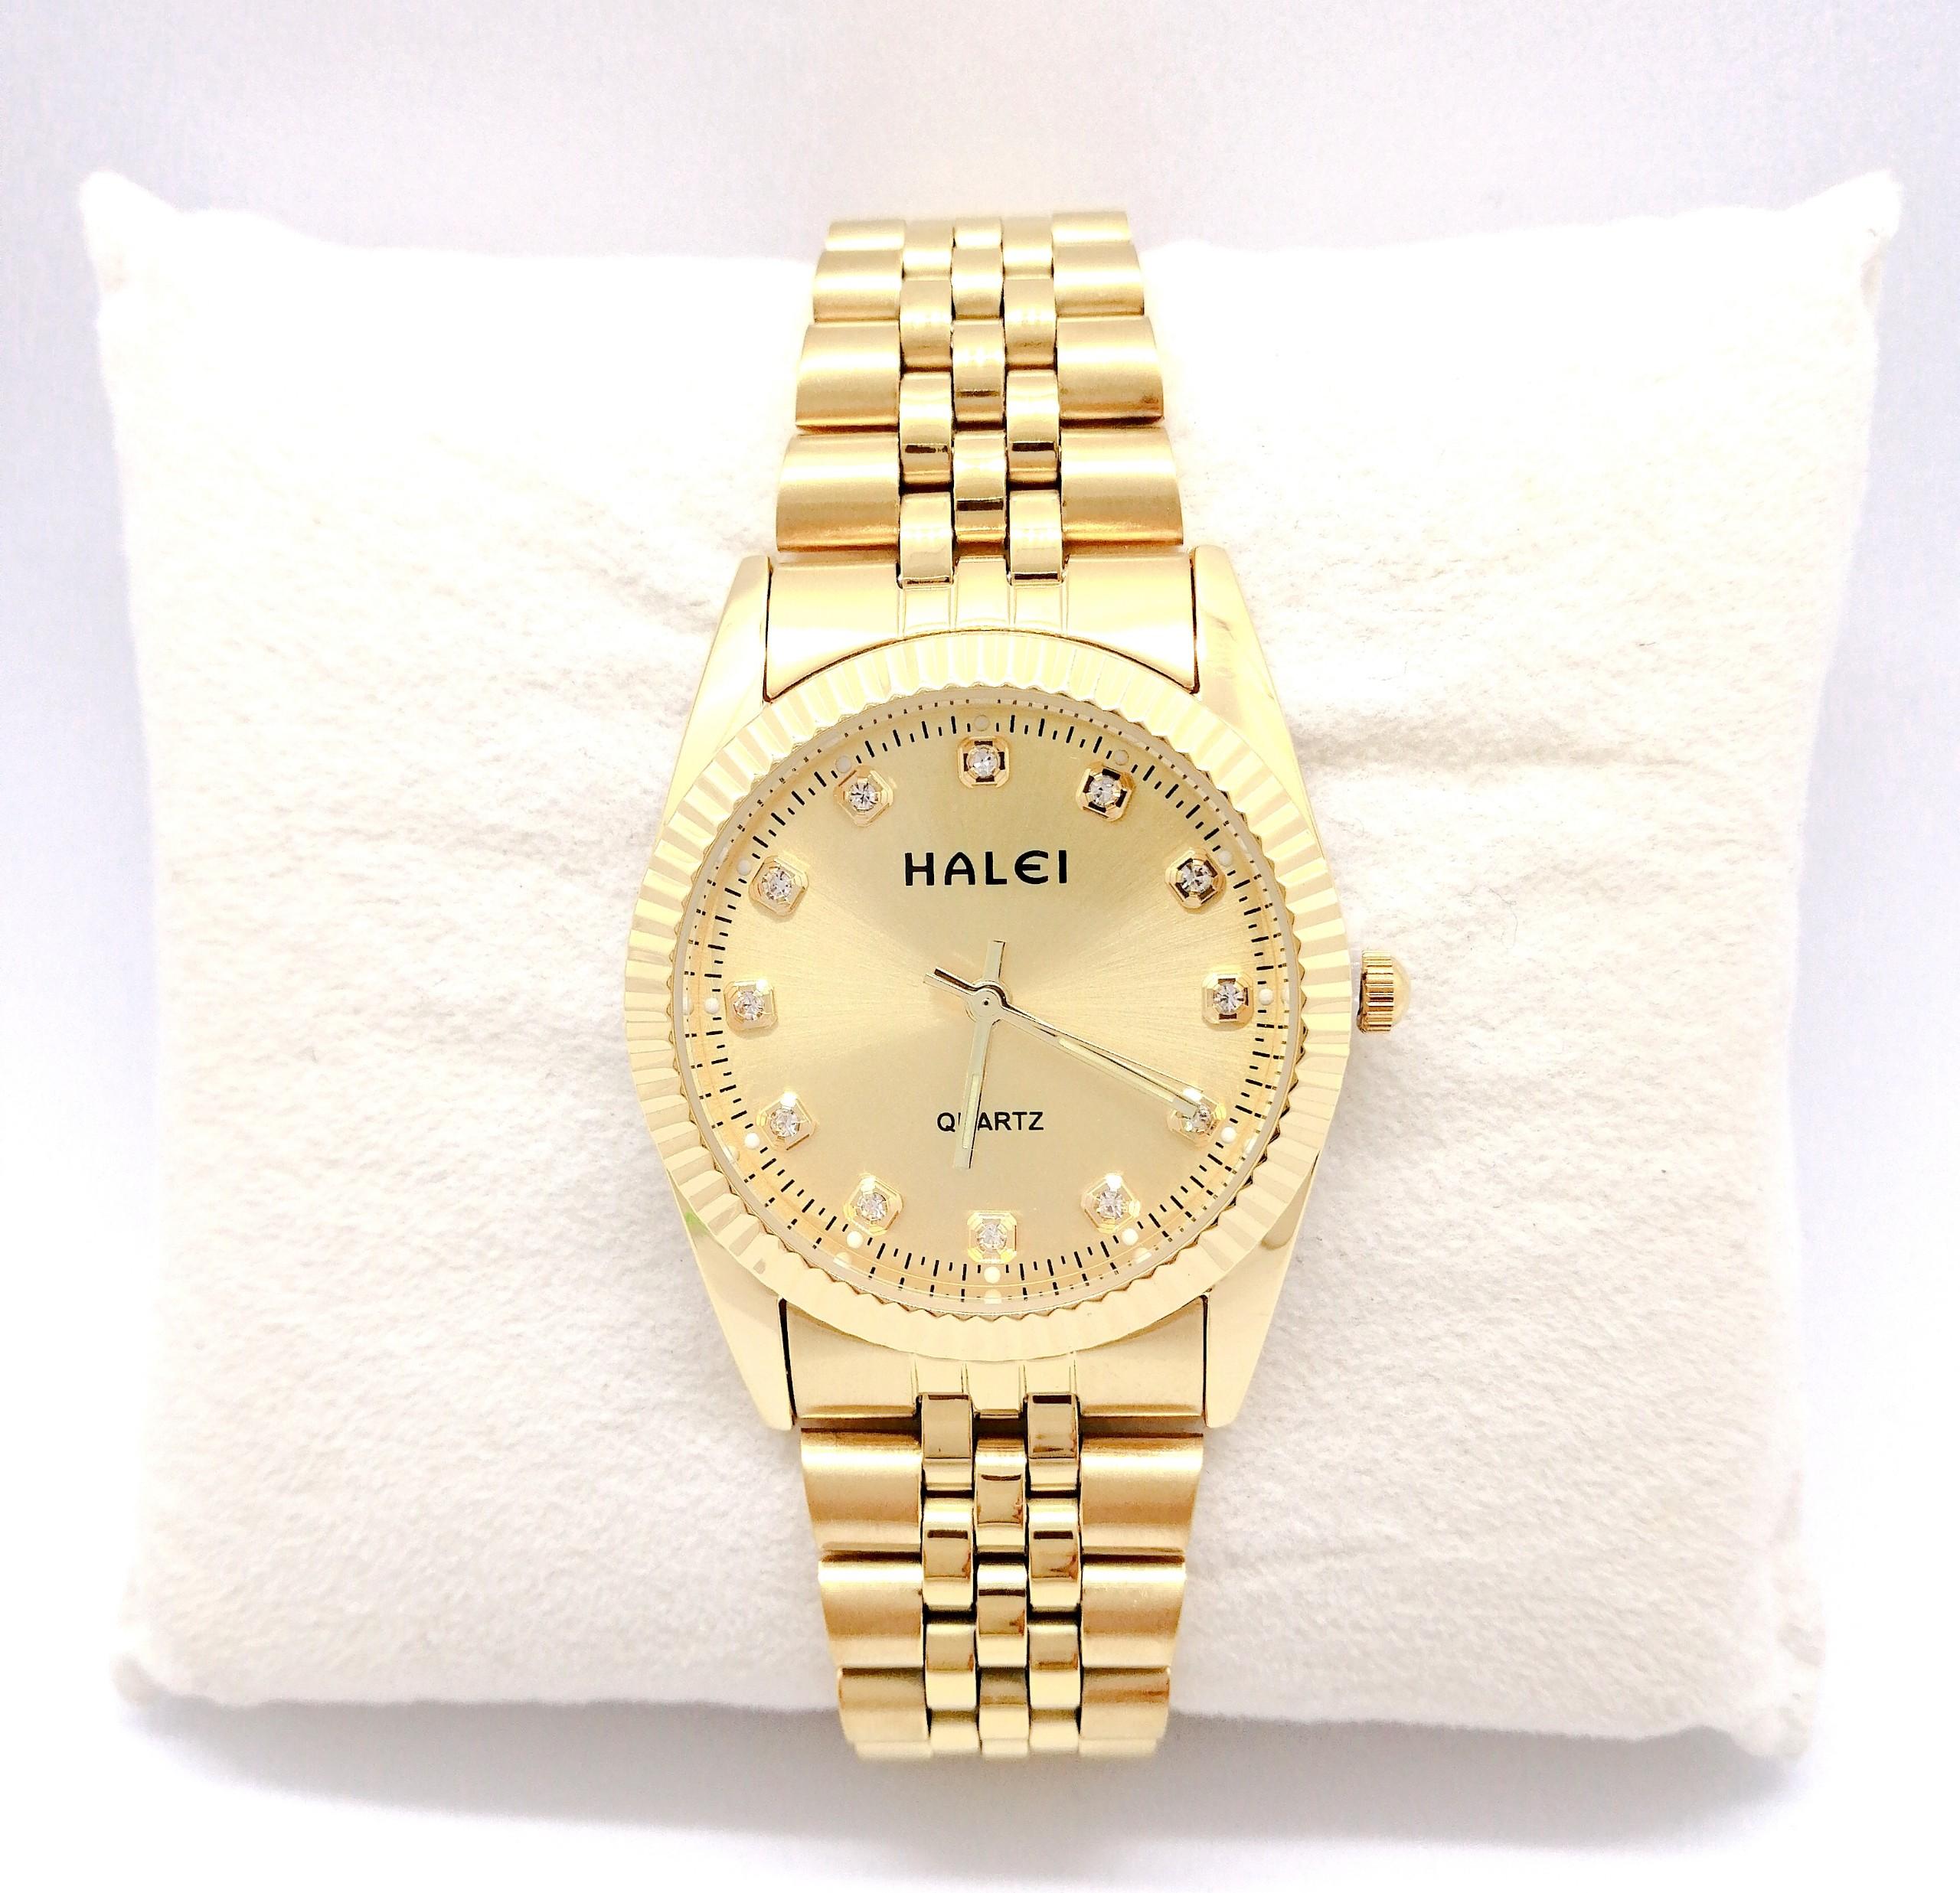 Đồng hồ Nam Halei  HL356 dây vàng + Tặng Combo TẨY DA CHẾT APPLE WHITE PELLING GEL BEAUSKIN chính hãng